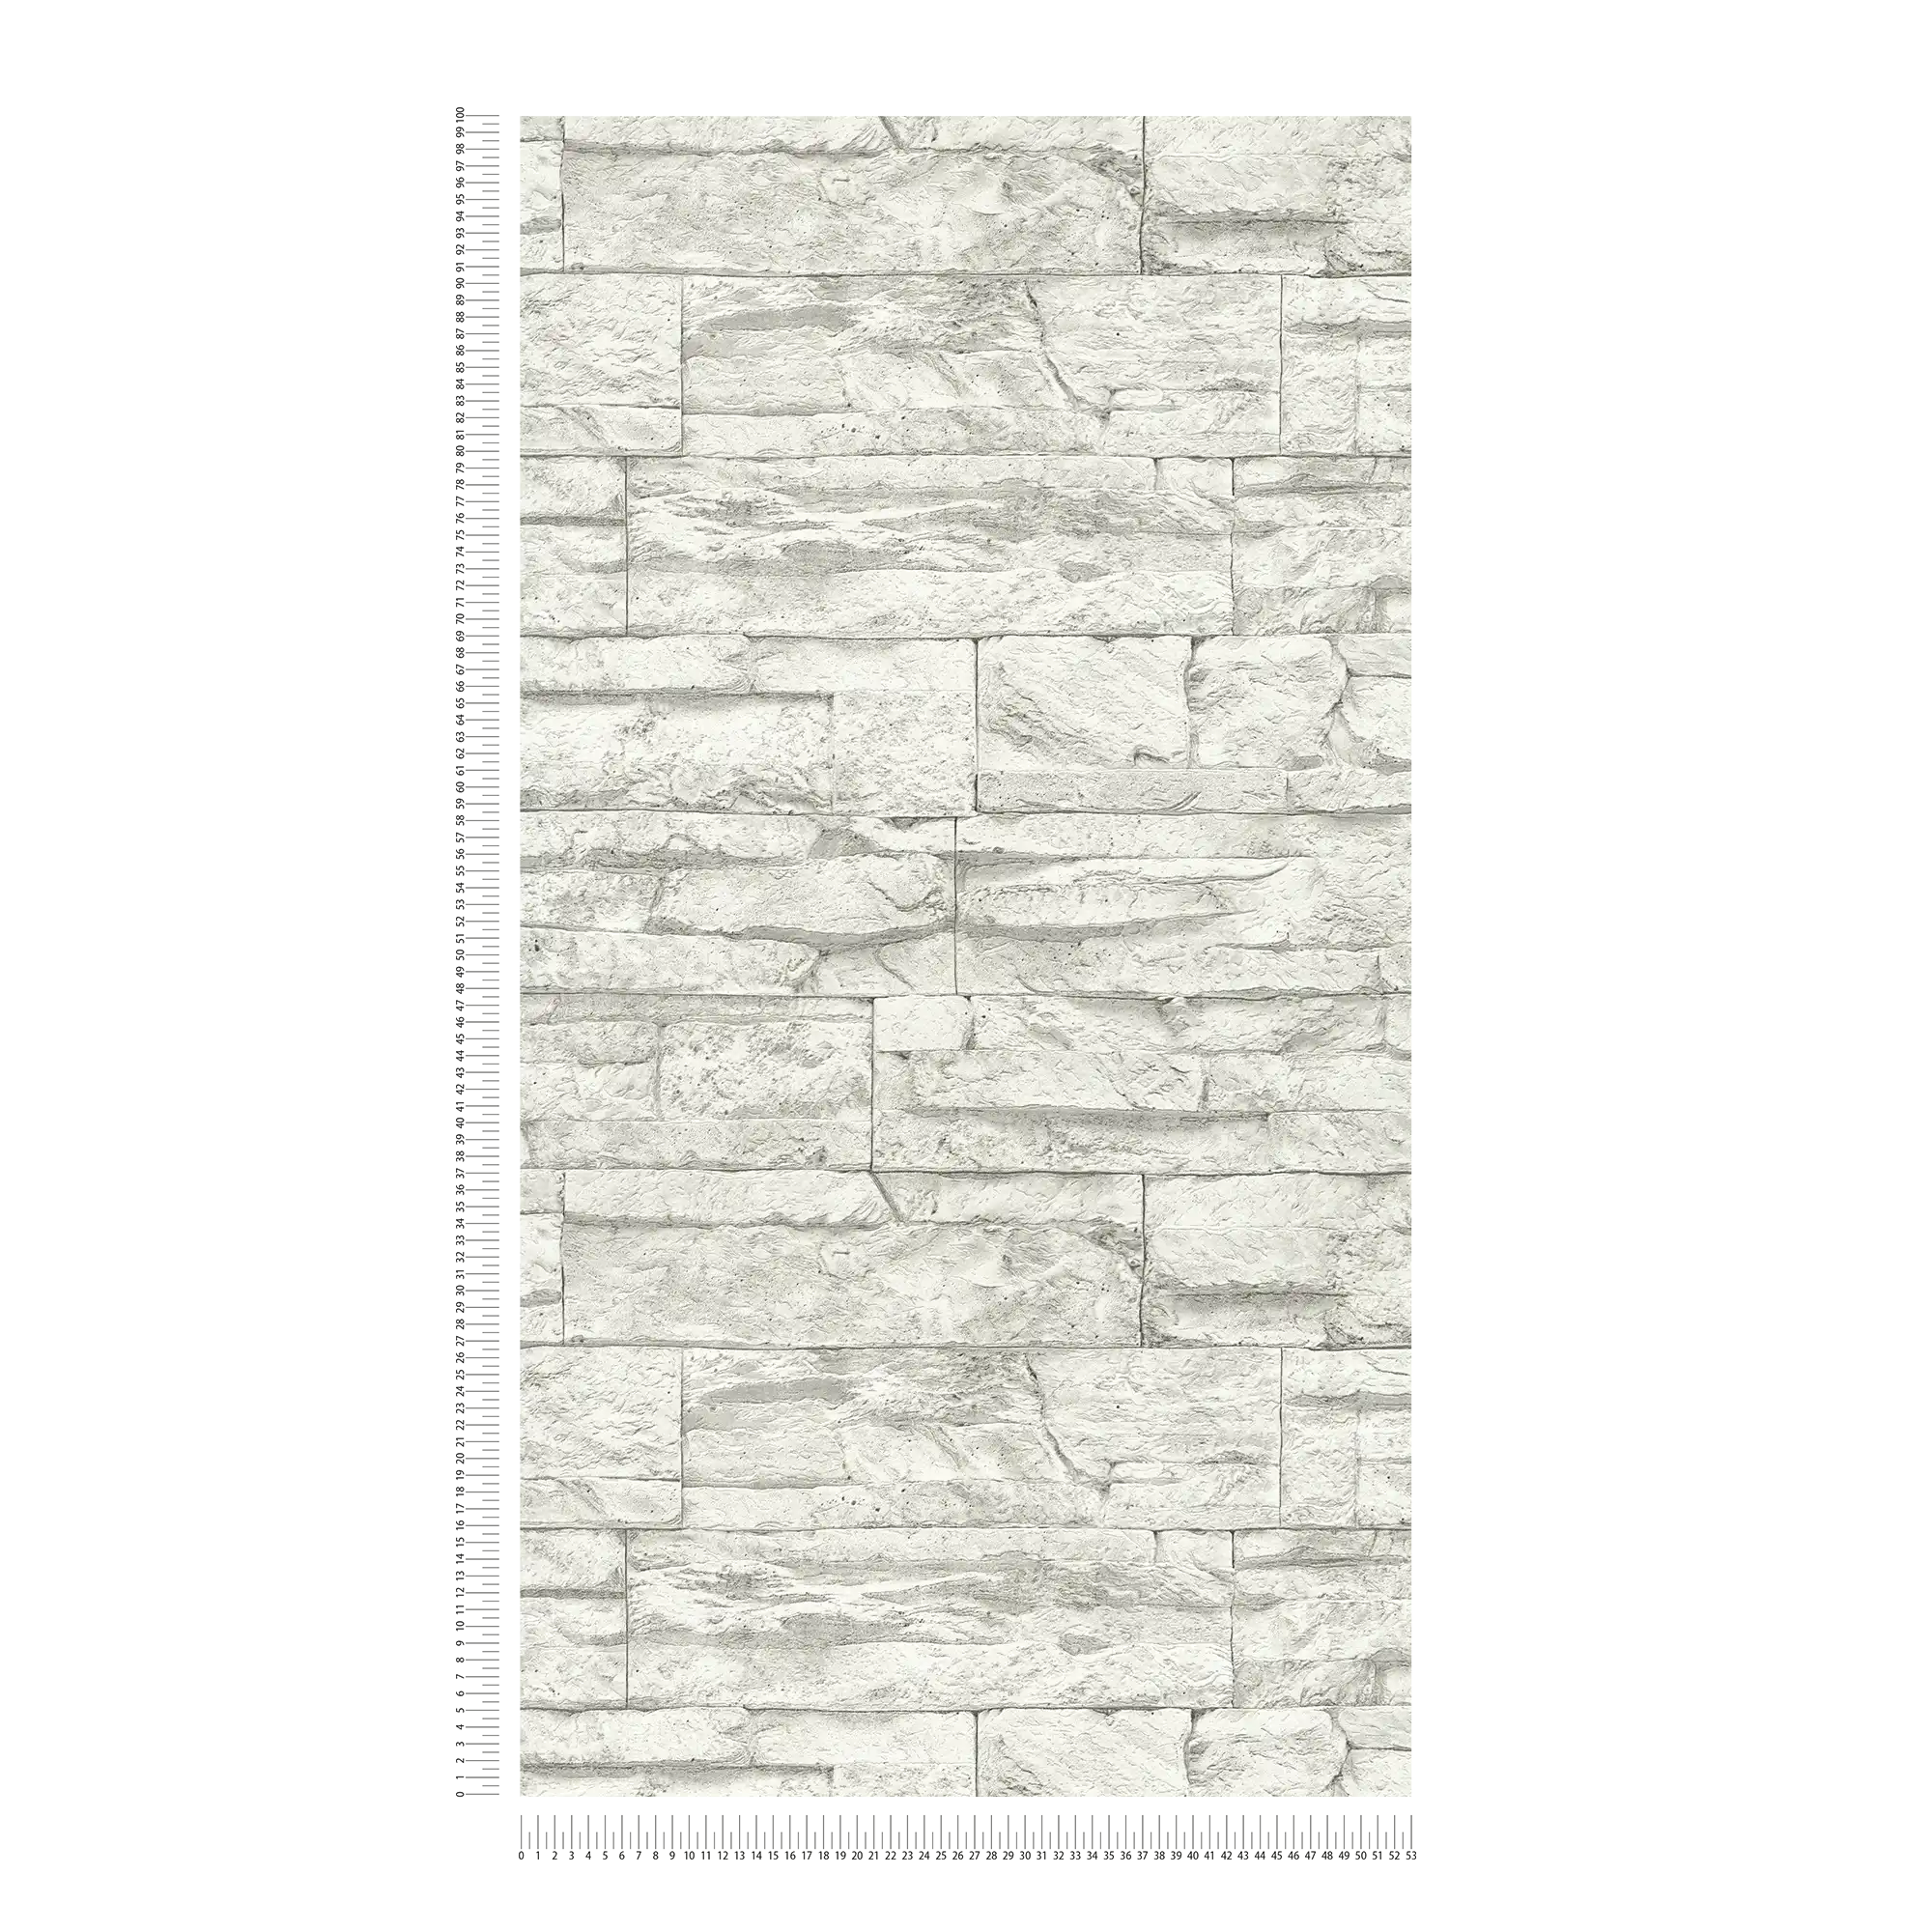             Carta da parati con muratura in pietra naturale chiara - Bianco, Grigio
        